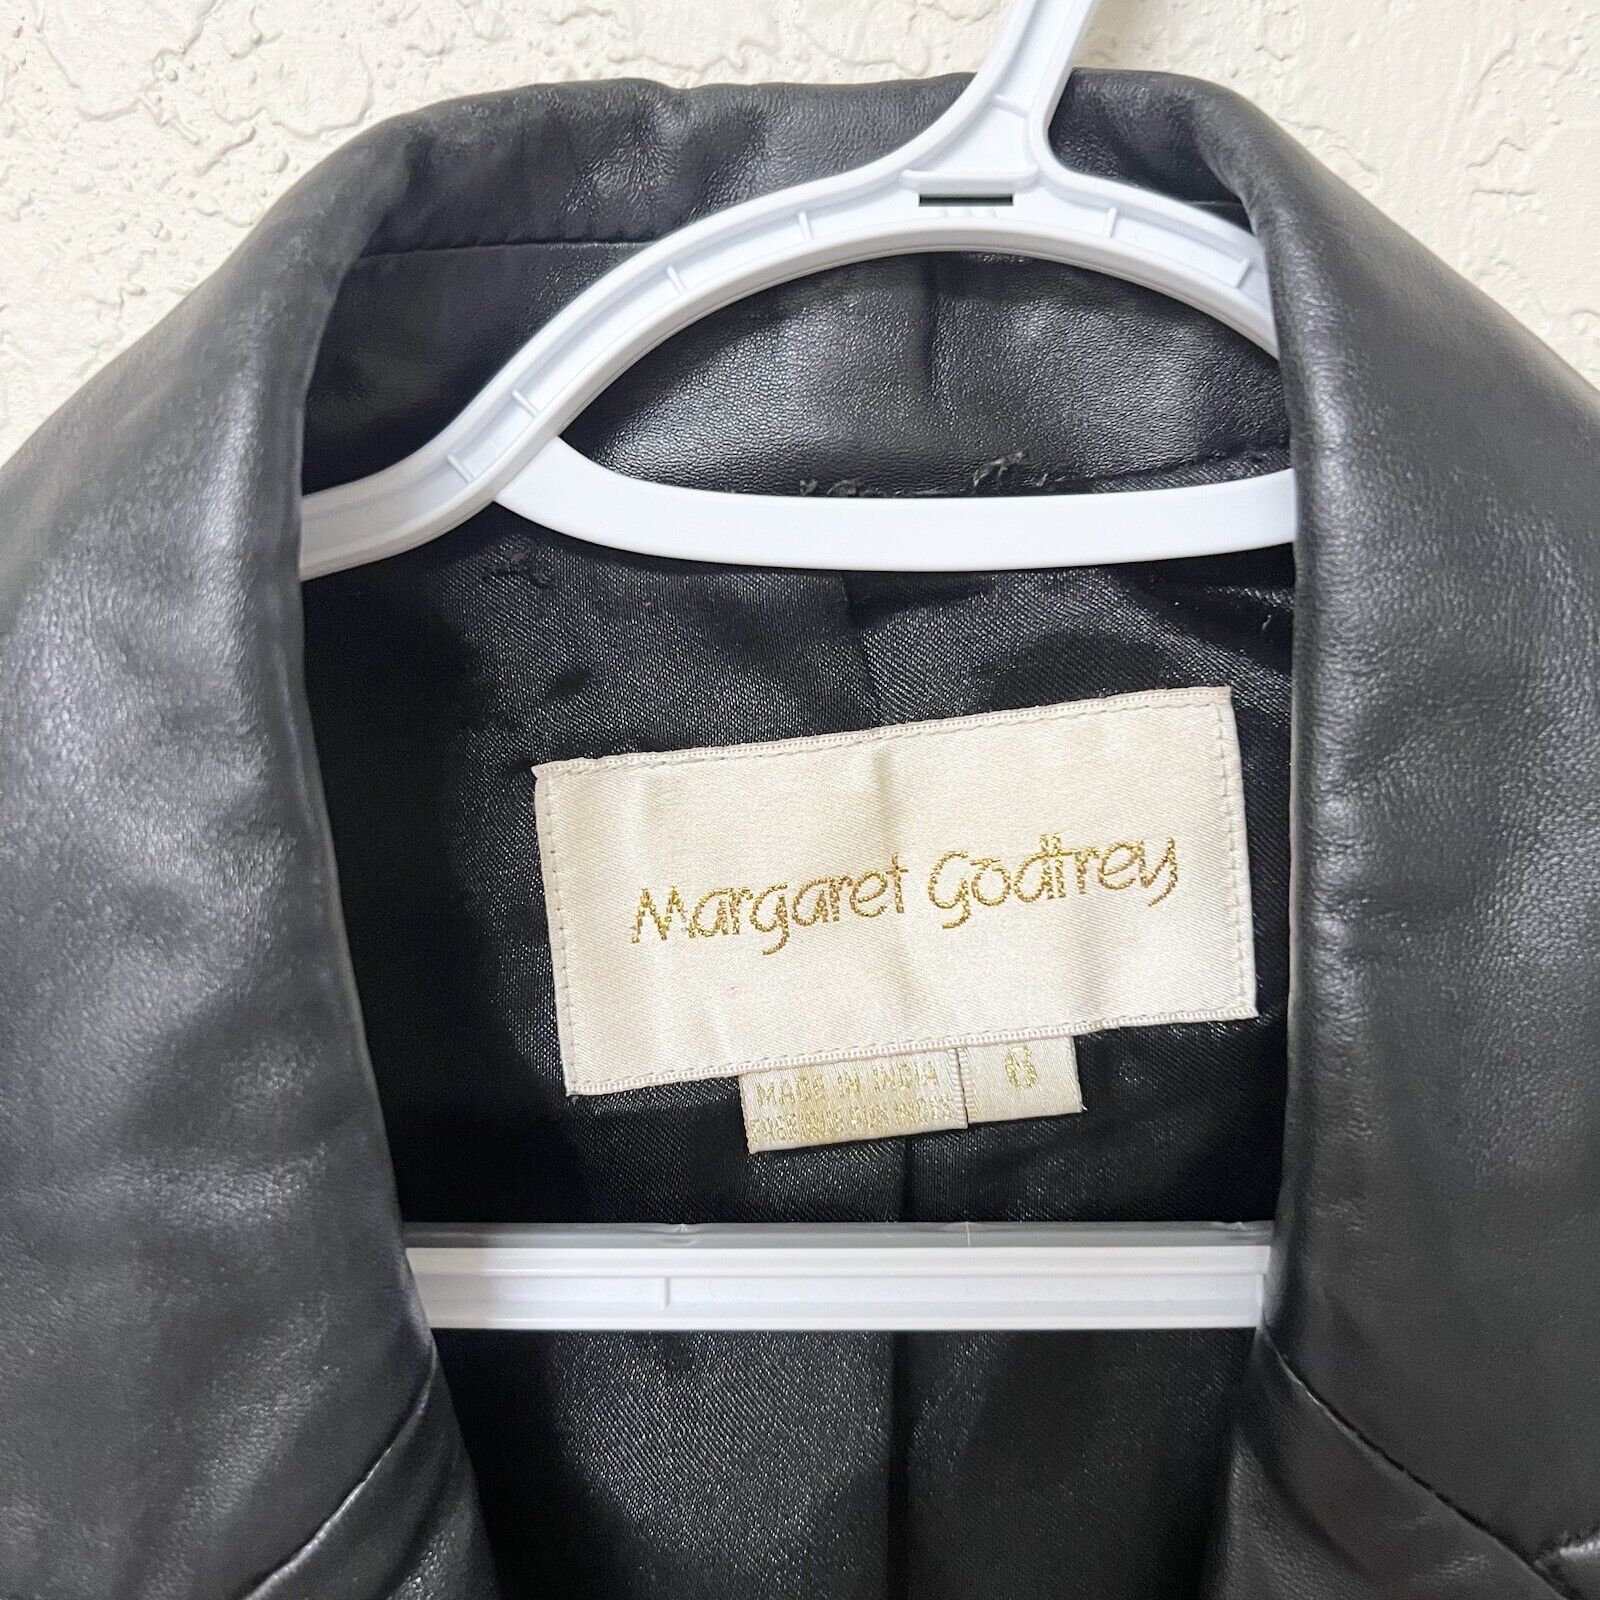 Margaret Godfrey Women's Black 100% Leather Jacke… - image 4